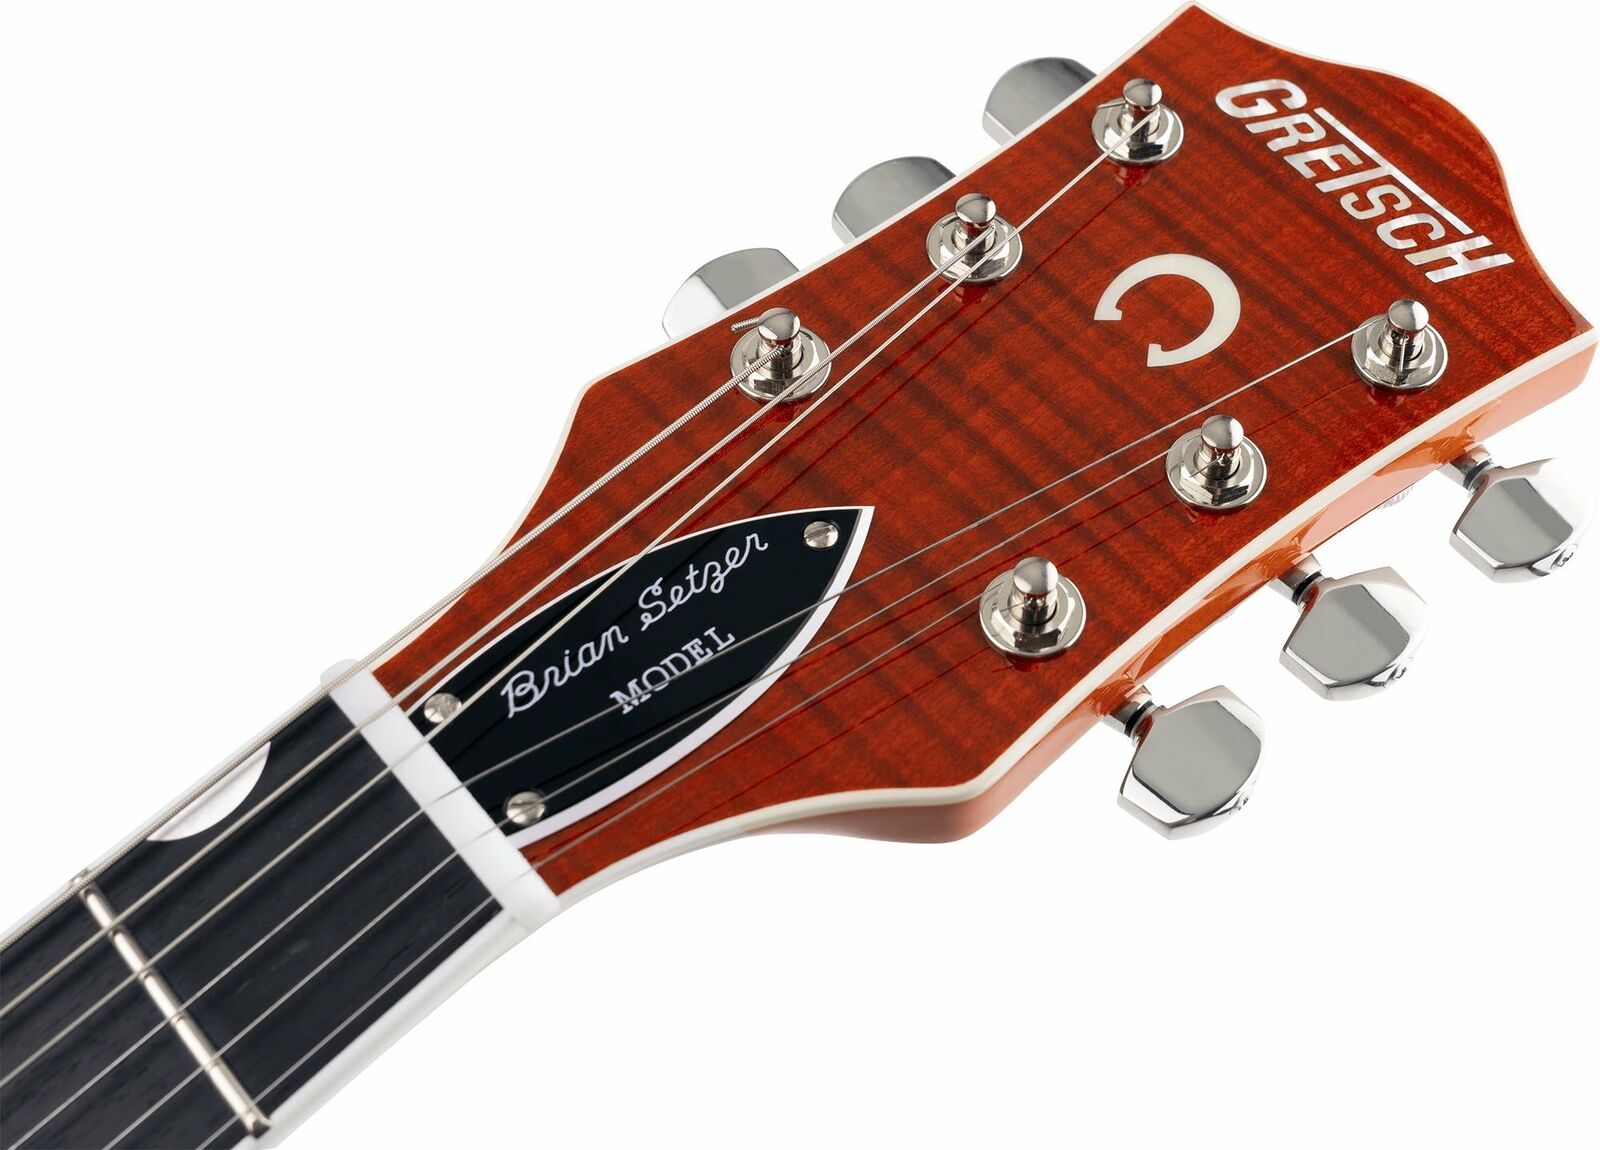 Gretsch G6120T Brian Setzer Signature Nashville Guitar - Orange Flame